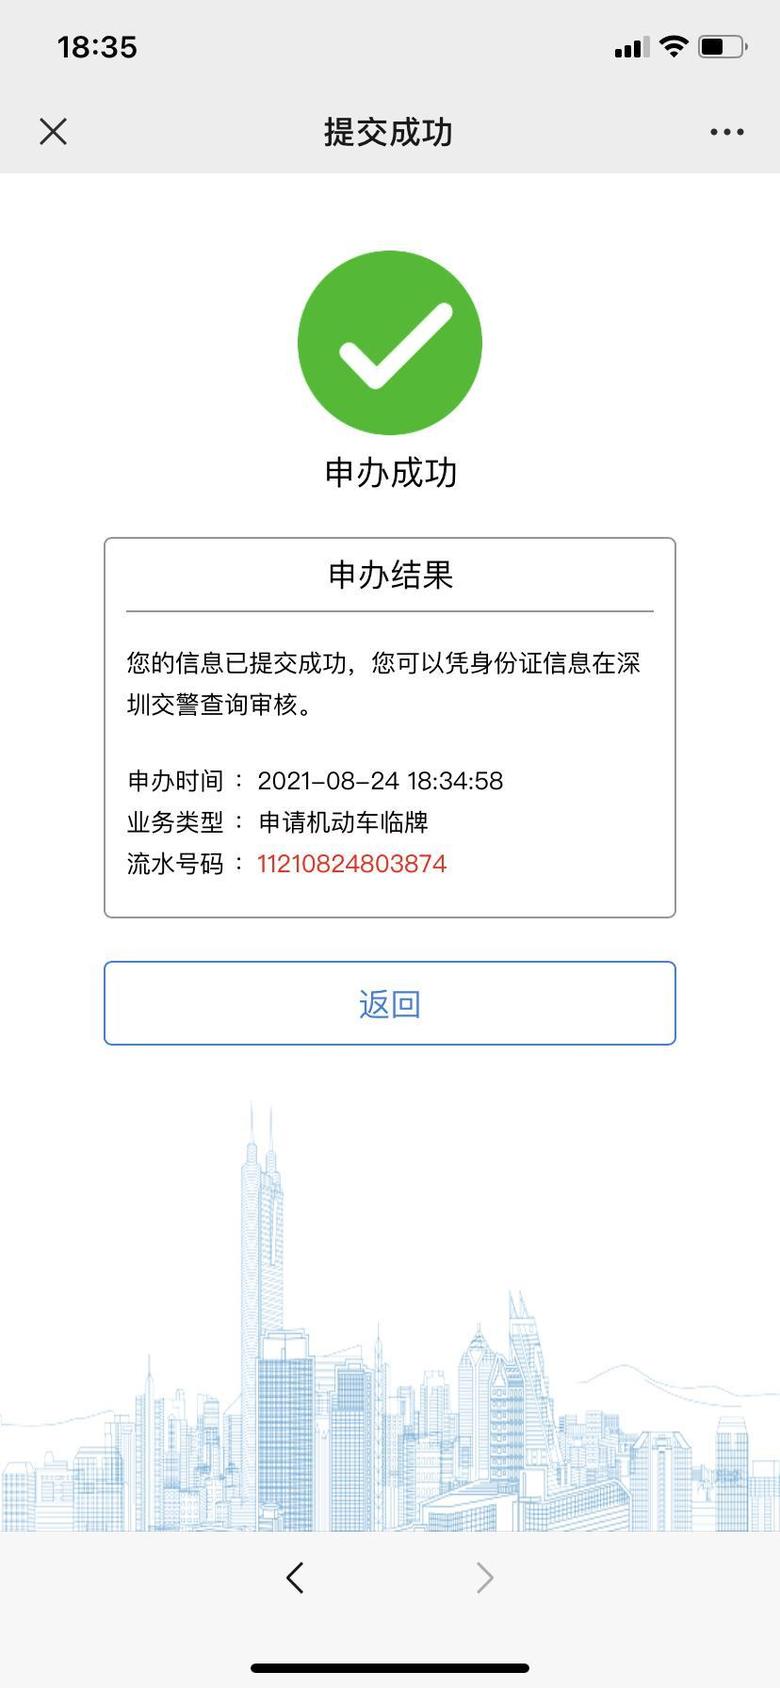 丰田c hr 在深圳交警公众号上申请了临时牌照，显示通过初审，待受理我想问下多久临牌才能拿到？